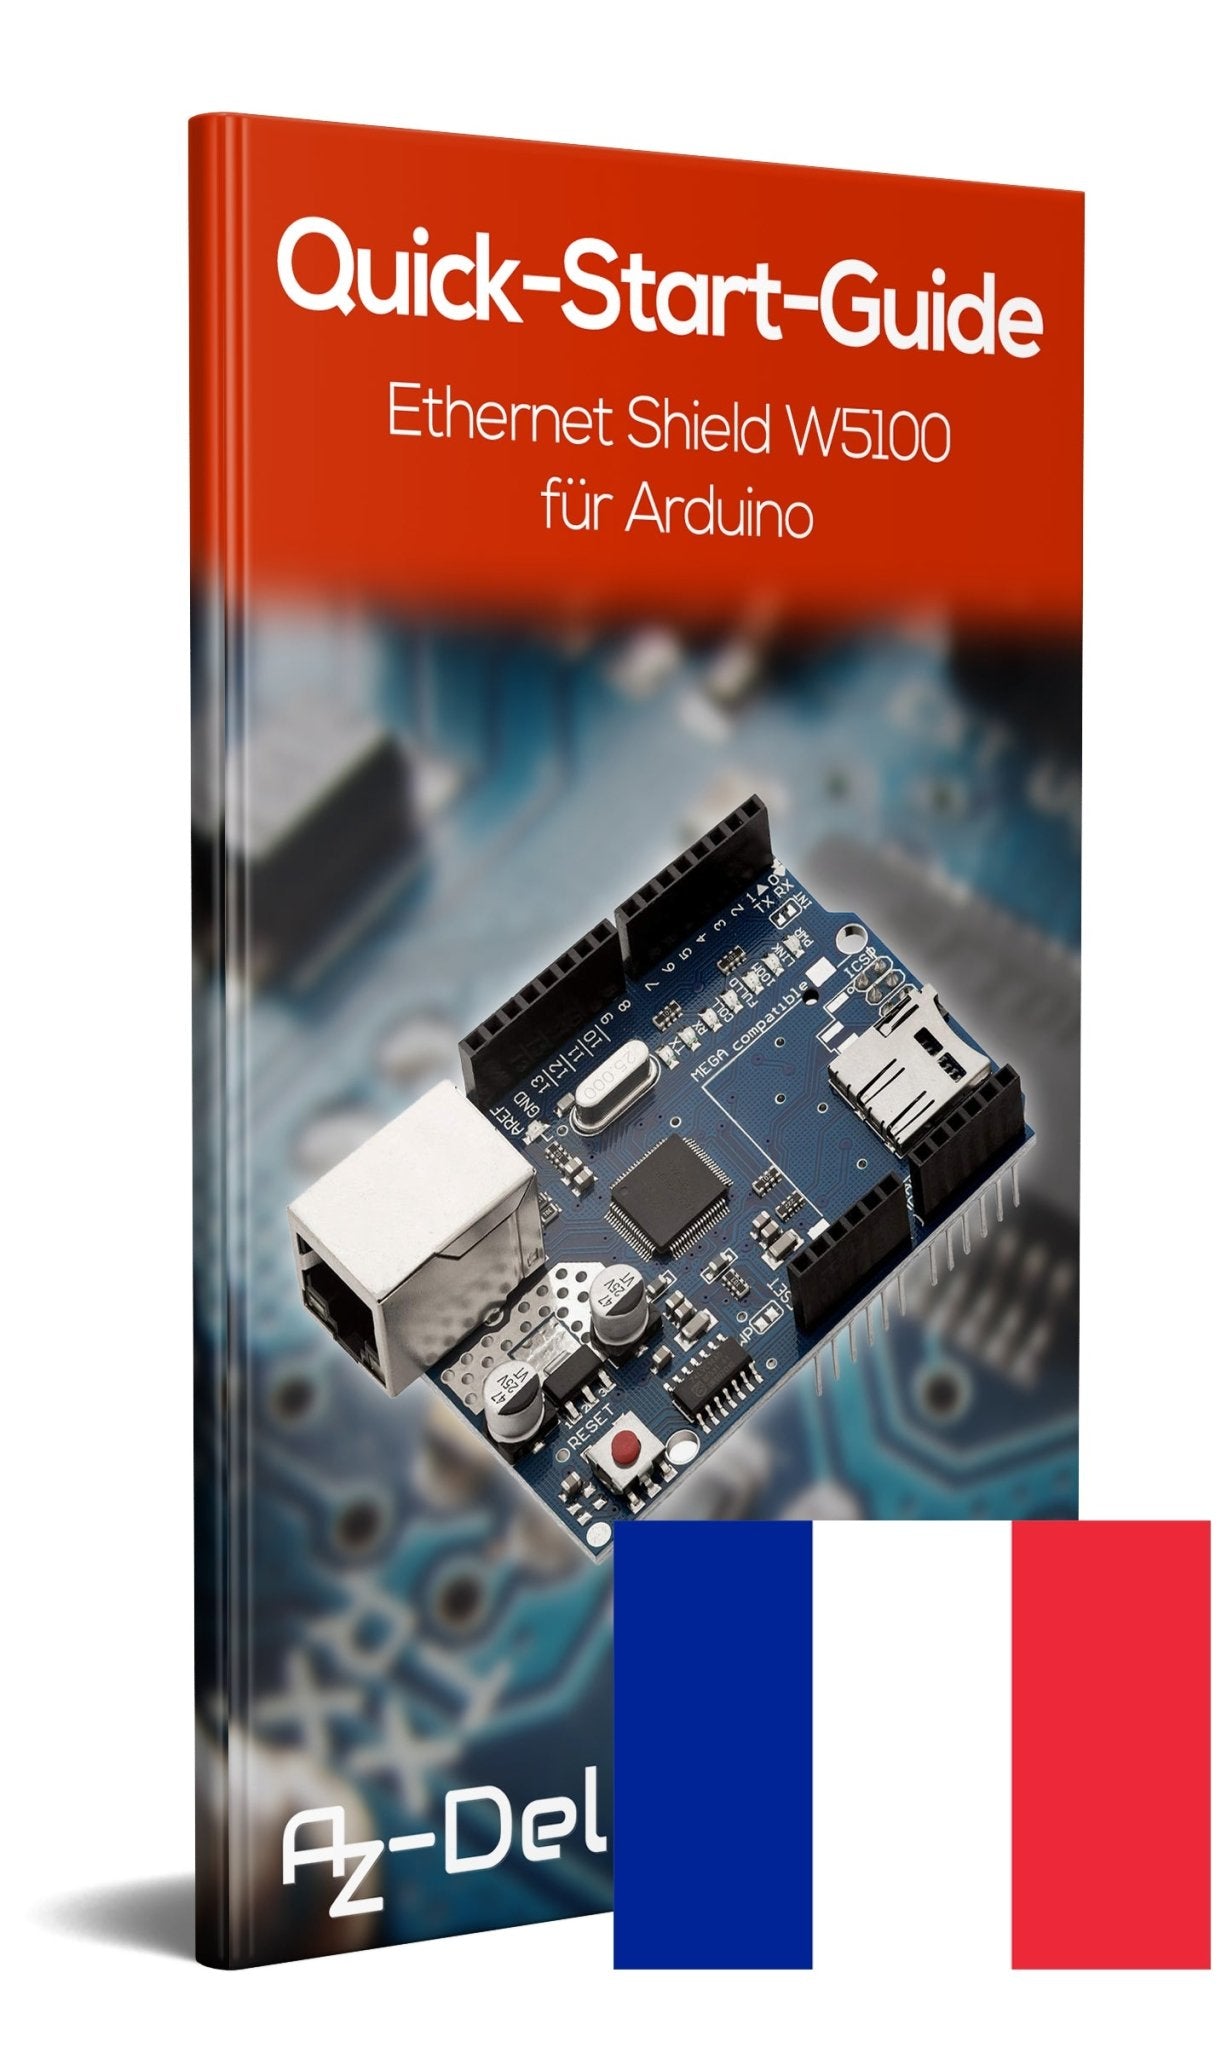 Ethernet Shield W5100 mit MicroSD-Karten Slot - AZ-Delivery